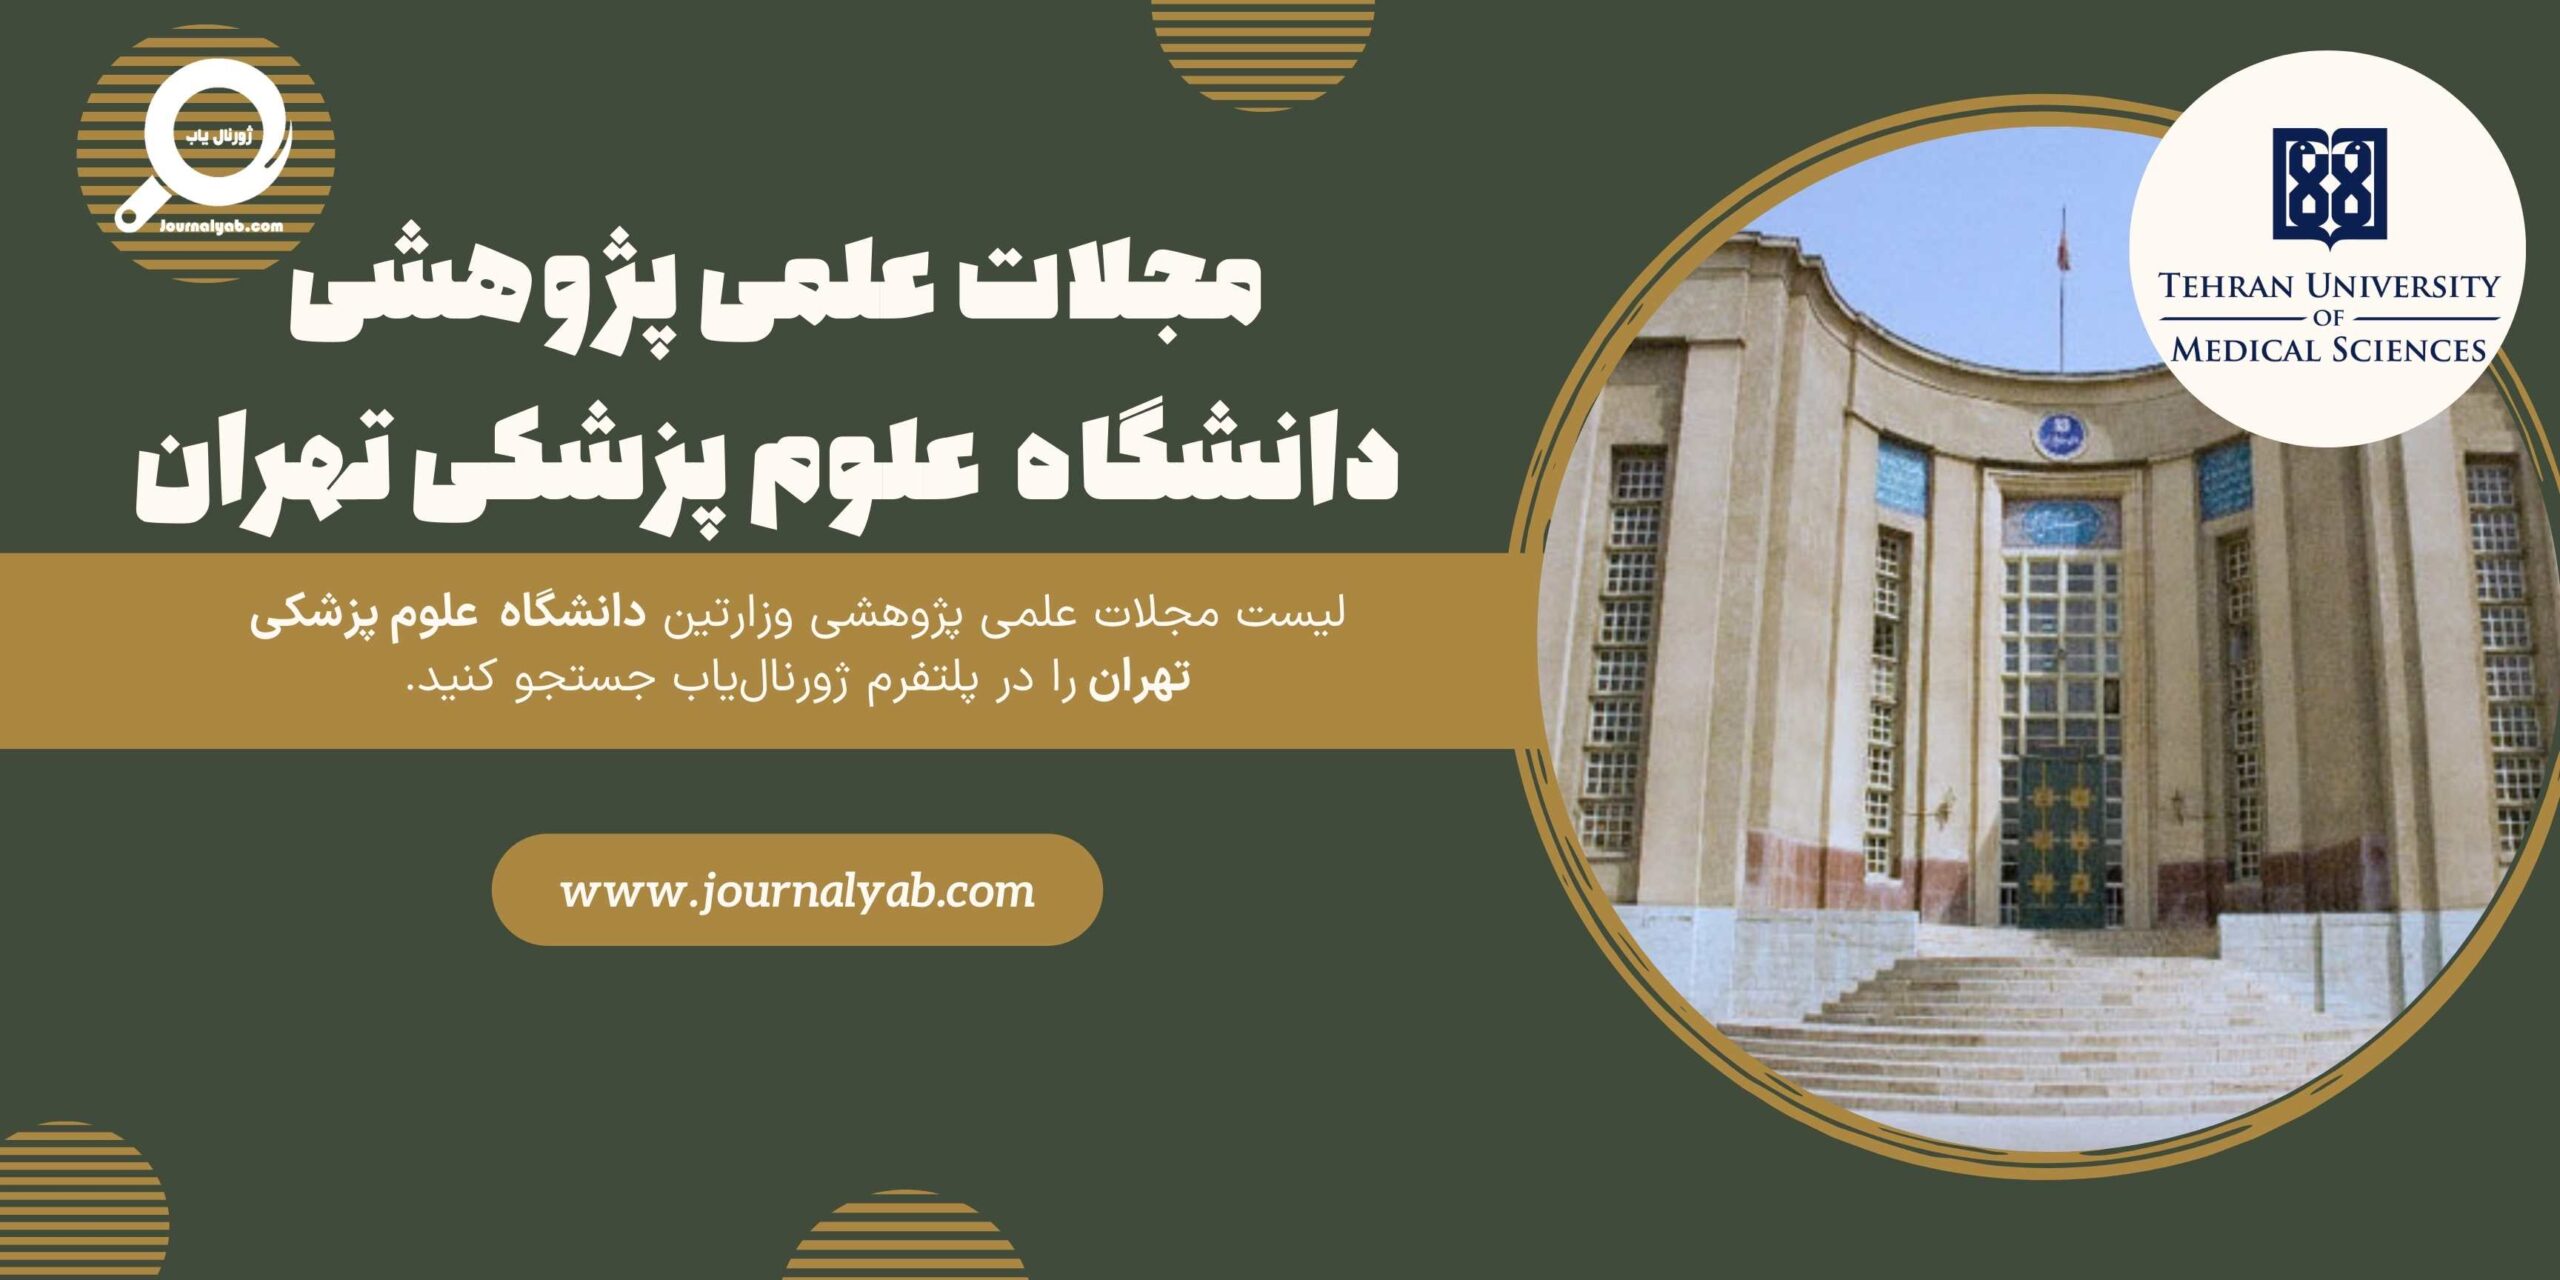 لیست مجلات دانشگاه علوم پزشکی تهران